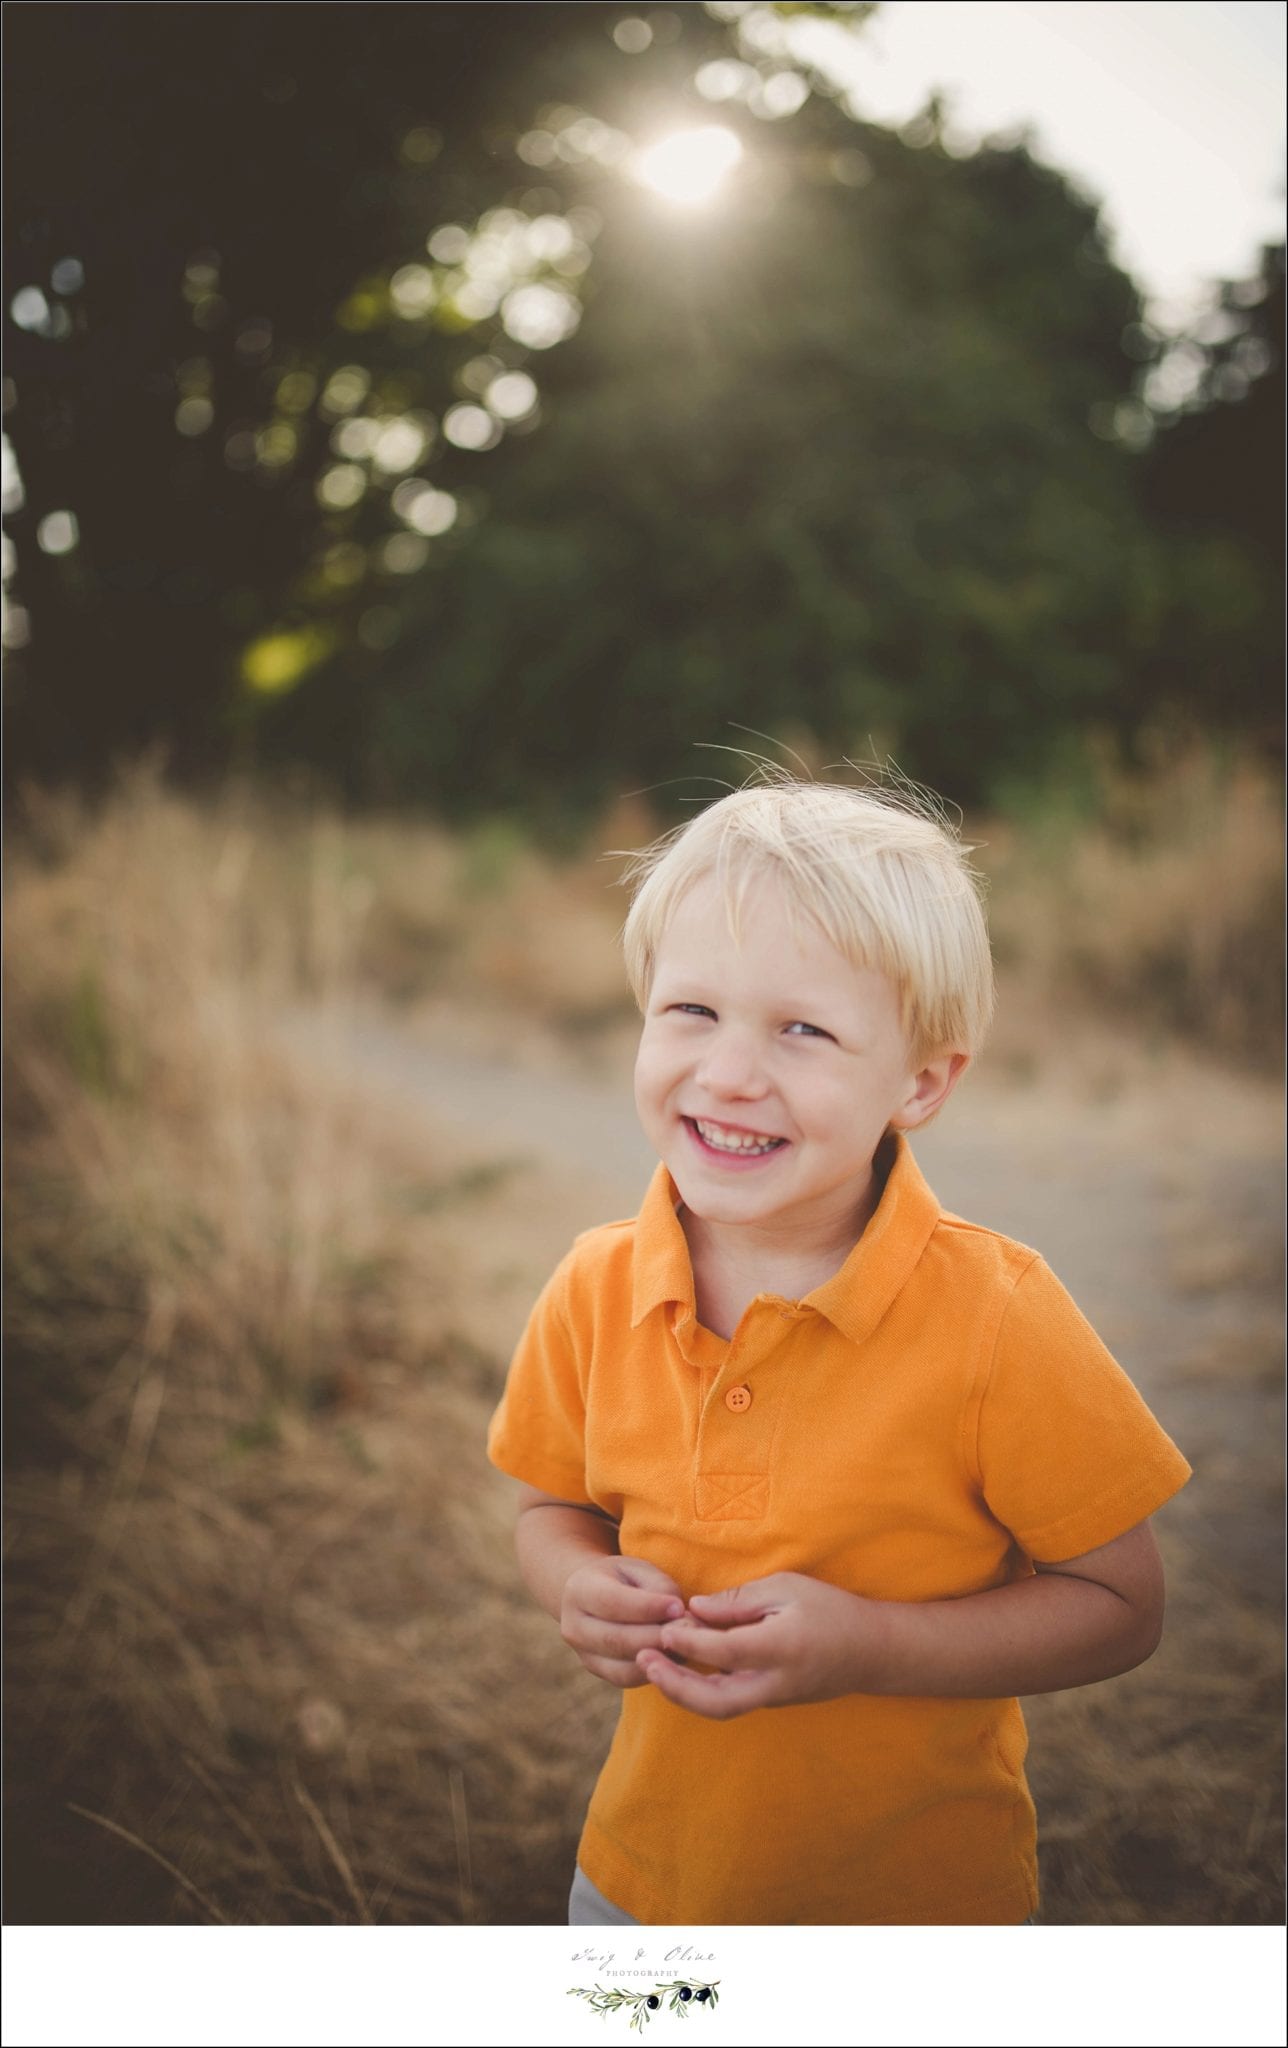 cute kid, orange shirt